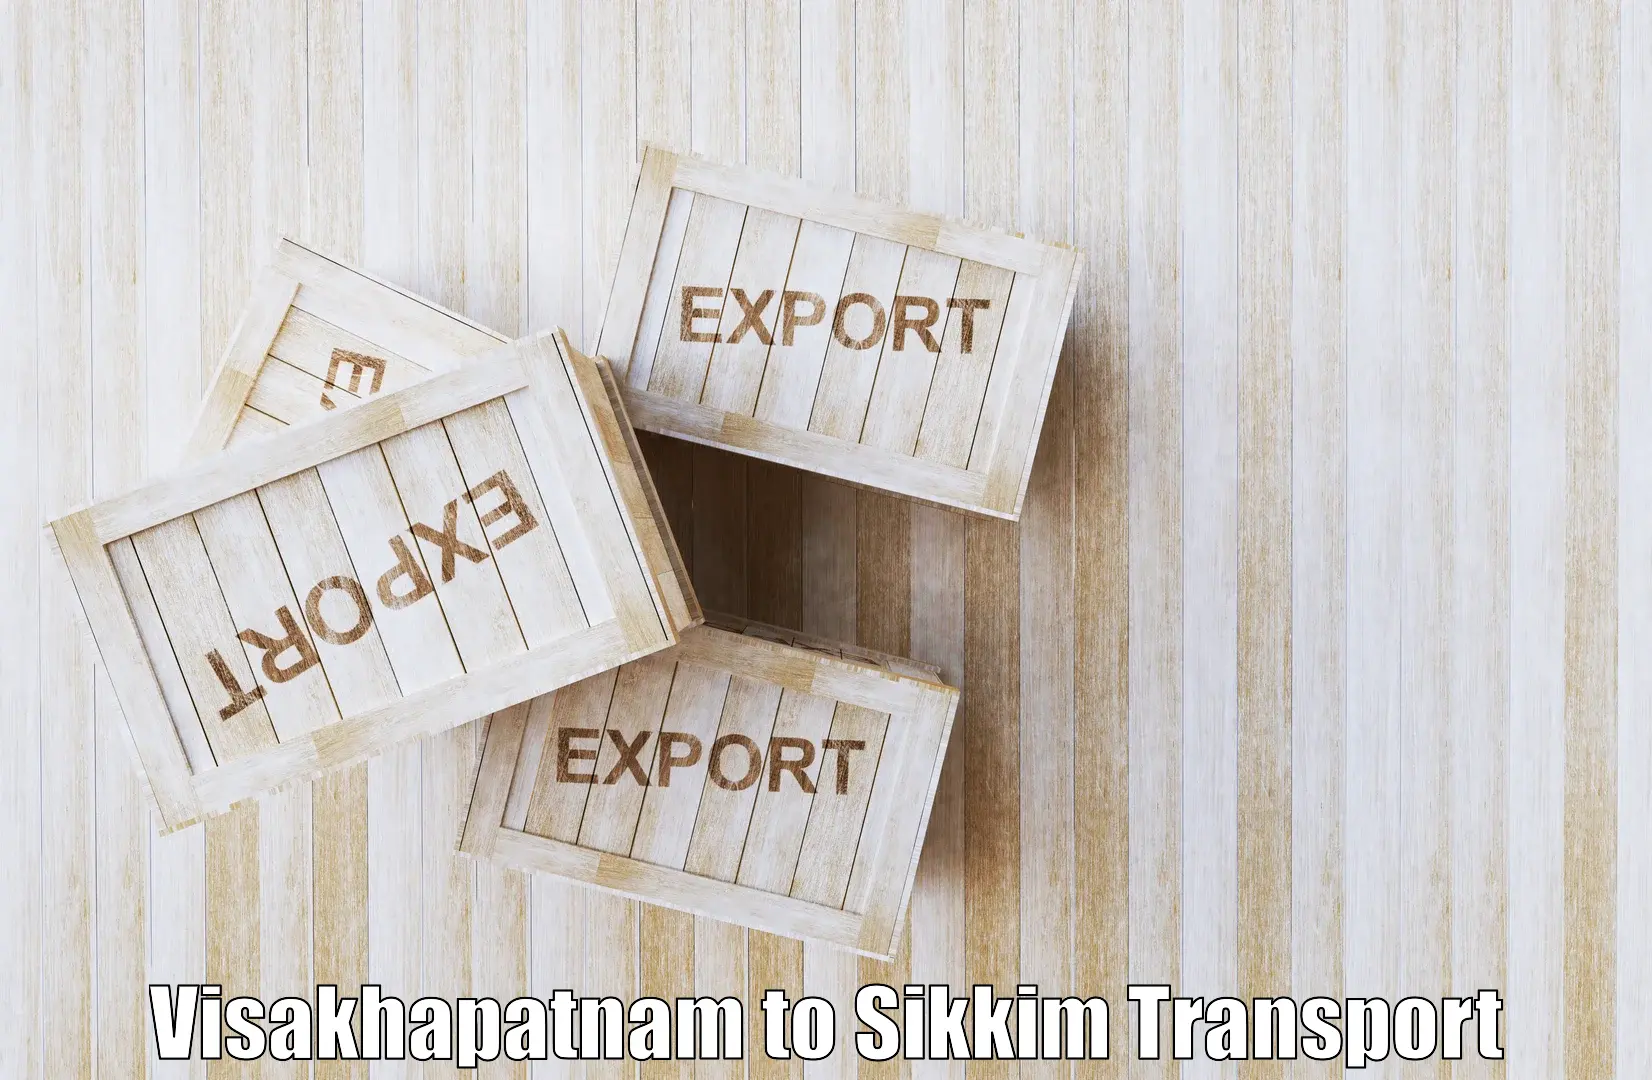 Transport in sharing Visakhapatnam to Mangan